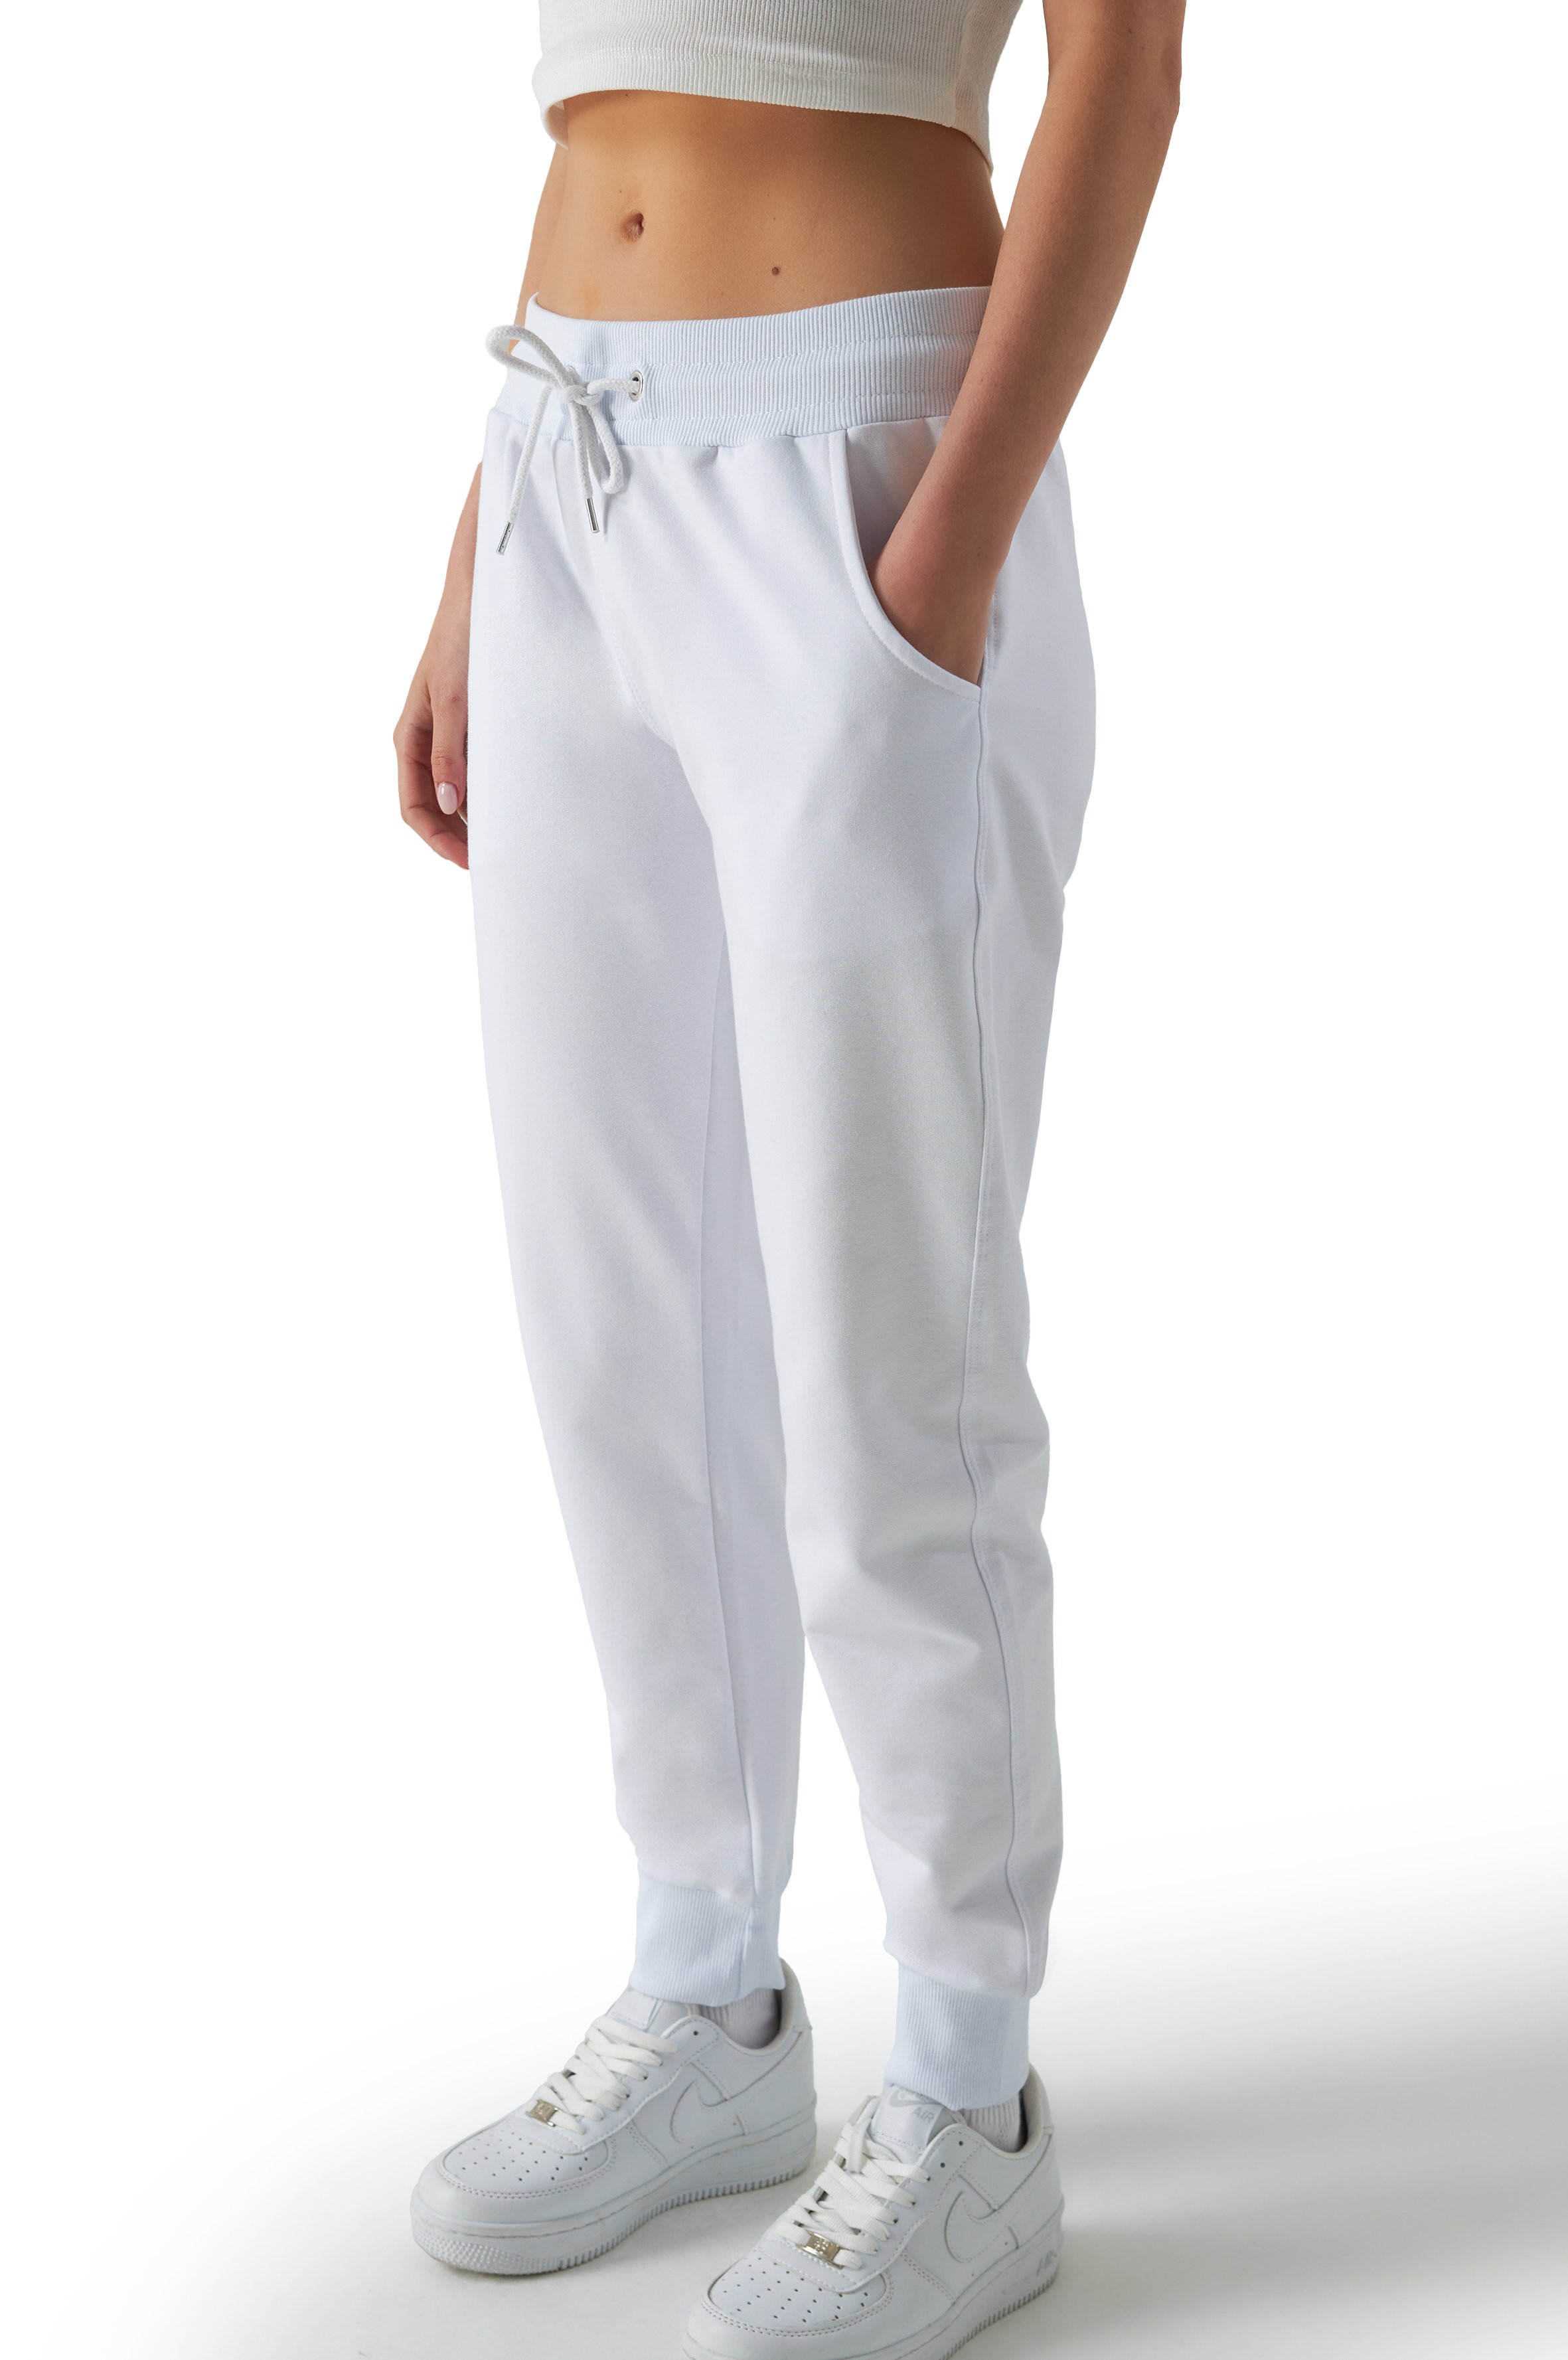 Jogginghose Damen - Seitlich Pocket - Weiß